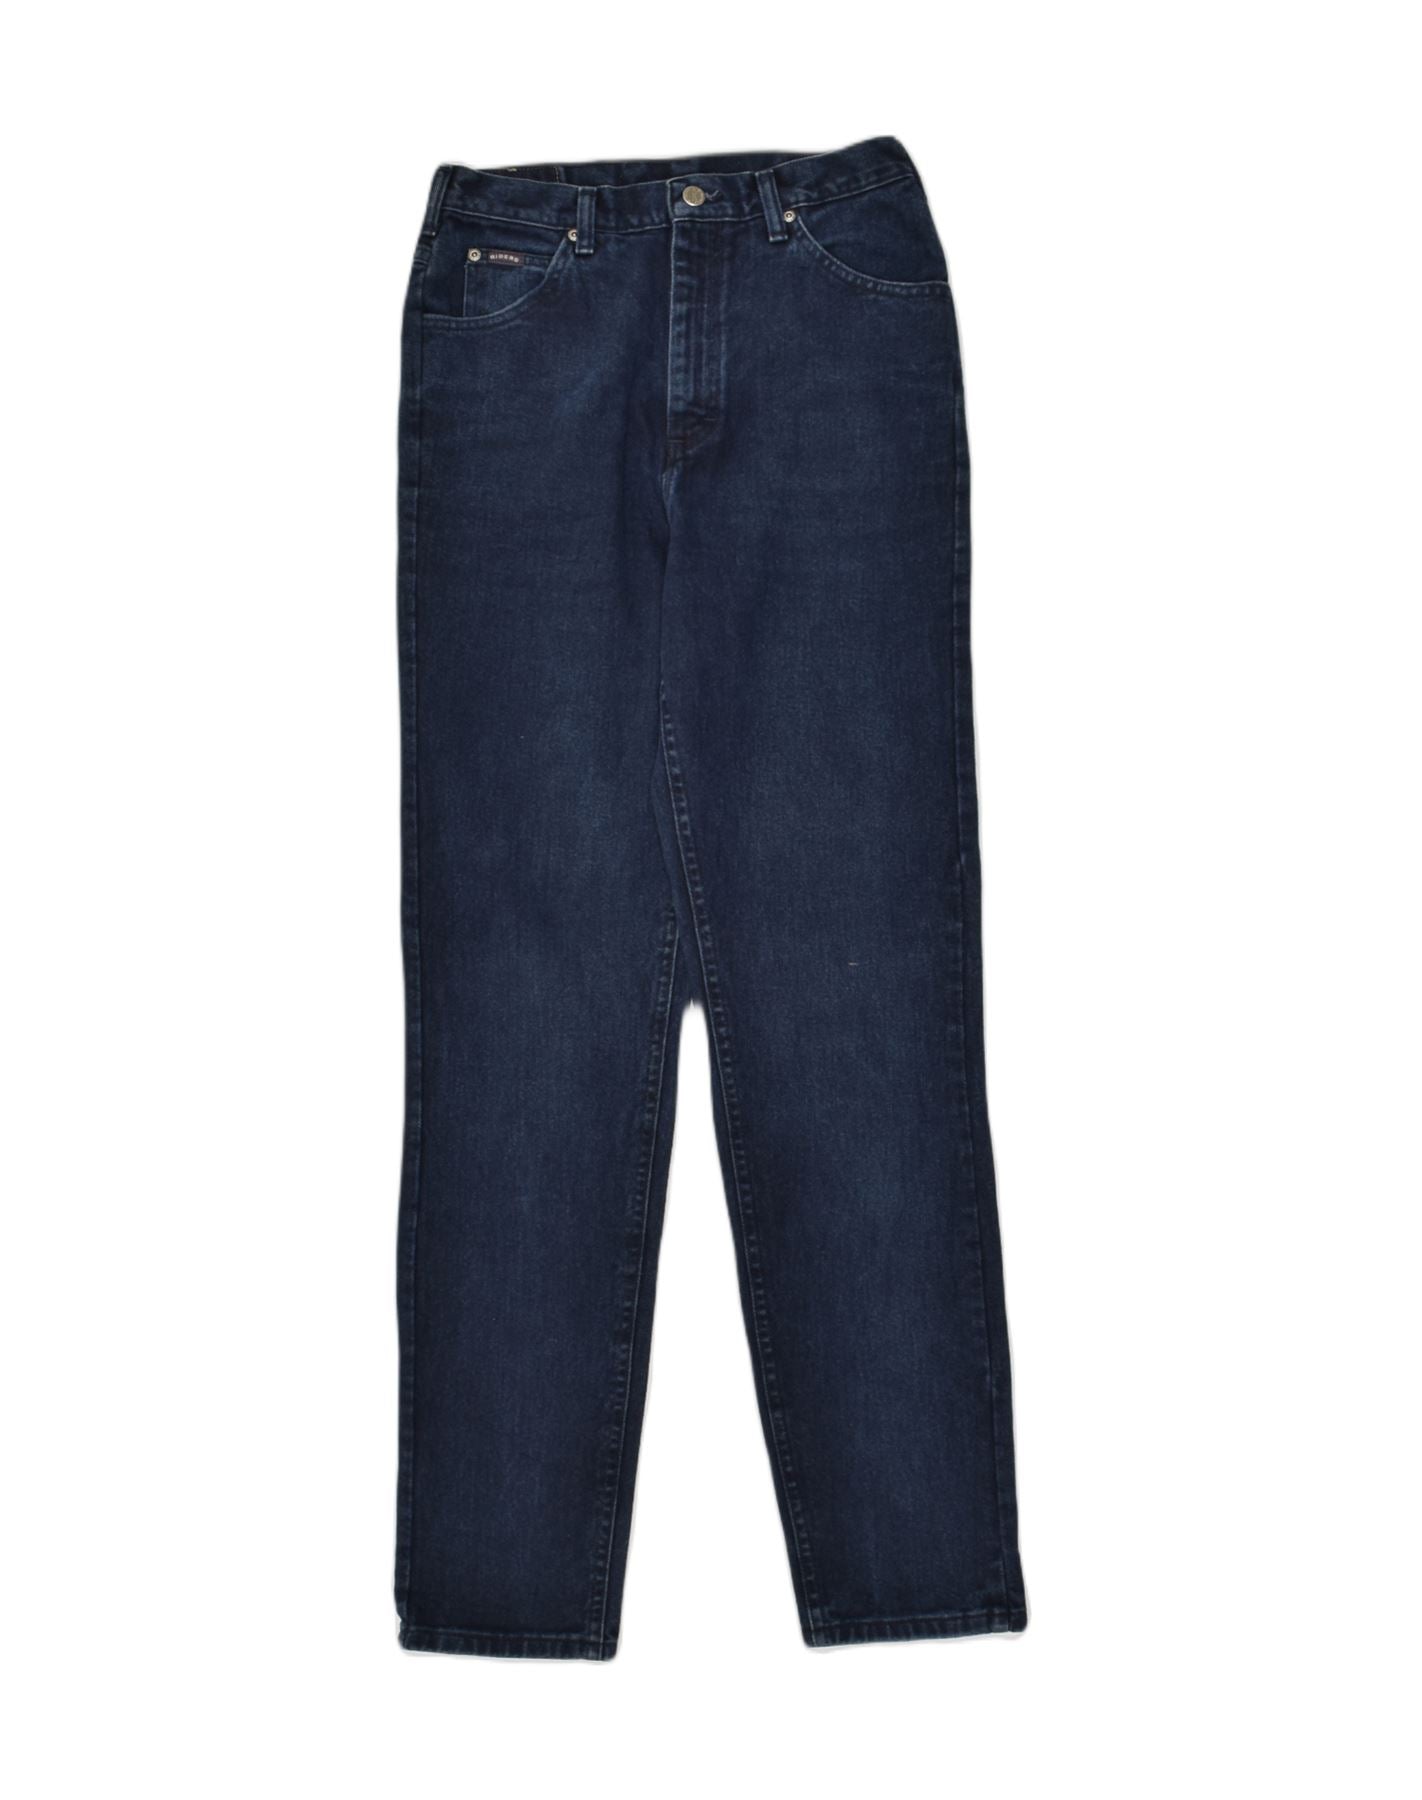 EDDIE BAUER Womens Boyfriend Slim Jeans US 10 Medium W34 L31 Navy Blue, Vintage & Second-Hand Clothing Online